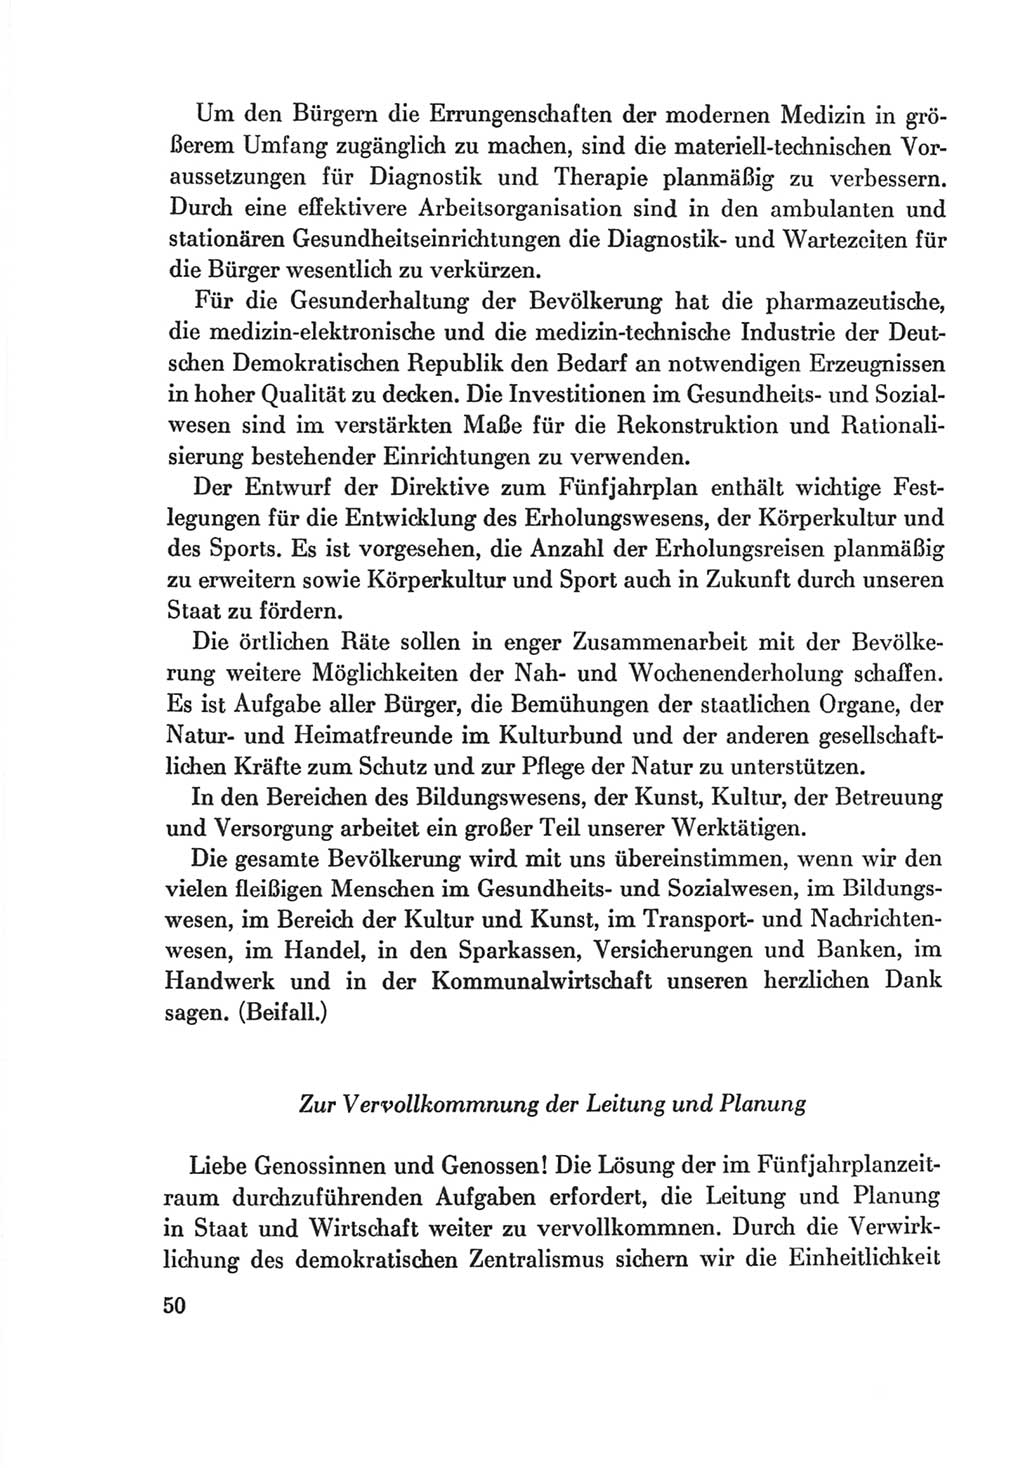 Protokoll der Verhandlungen des Ⅷ. Parteitages der Sozialistischen Einheitspartei Deutschlands (SED) [Deutsche Demokratische Republik (DDR)] 1971, Band 2, Seite 50 (Prot. Verh. Ⅷ. PT SED DDR 1971, Bd. 2, S. 50)